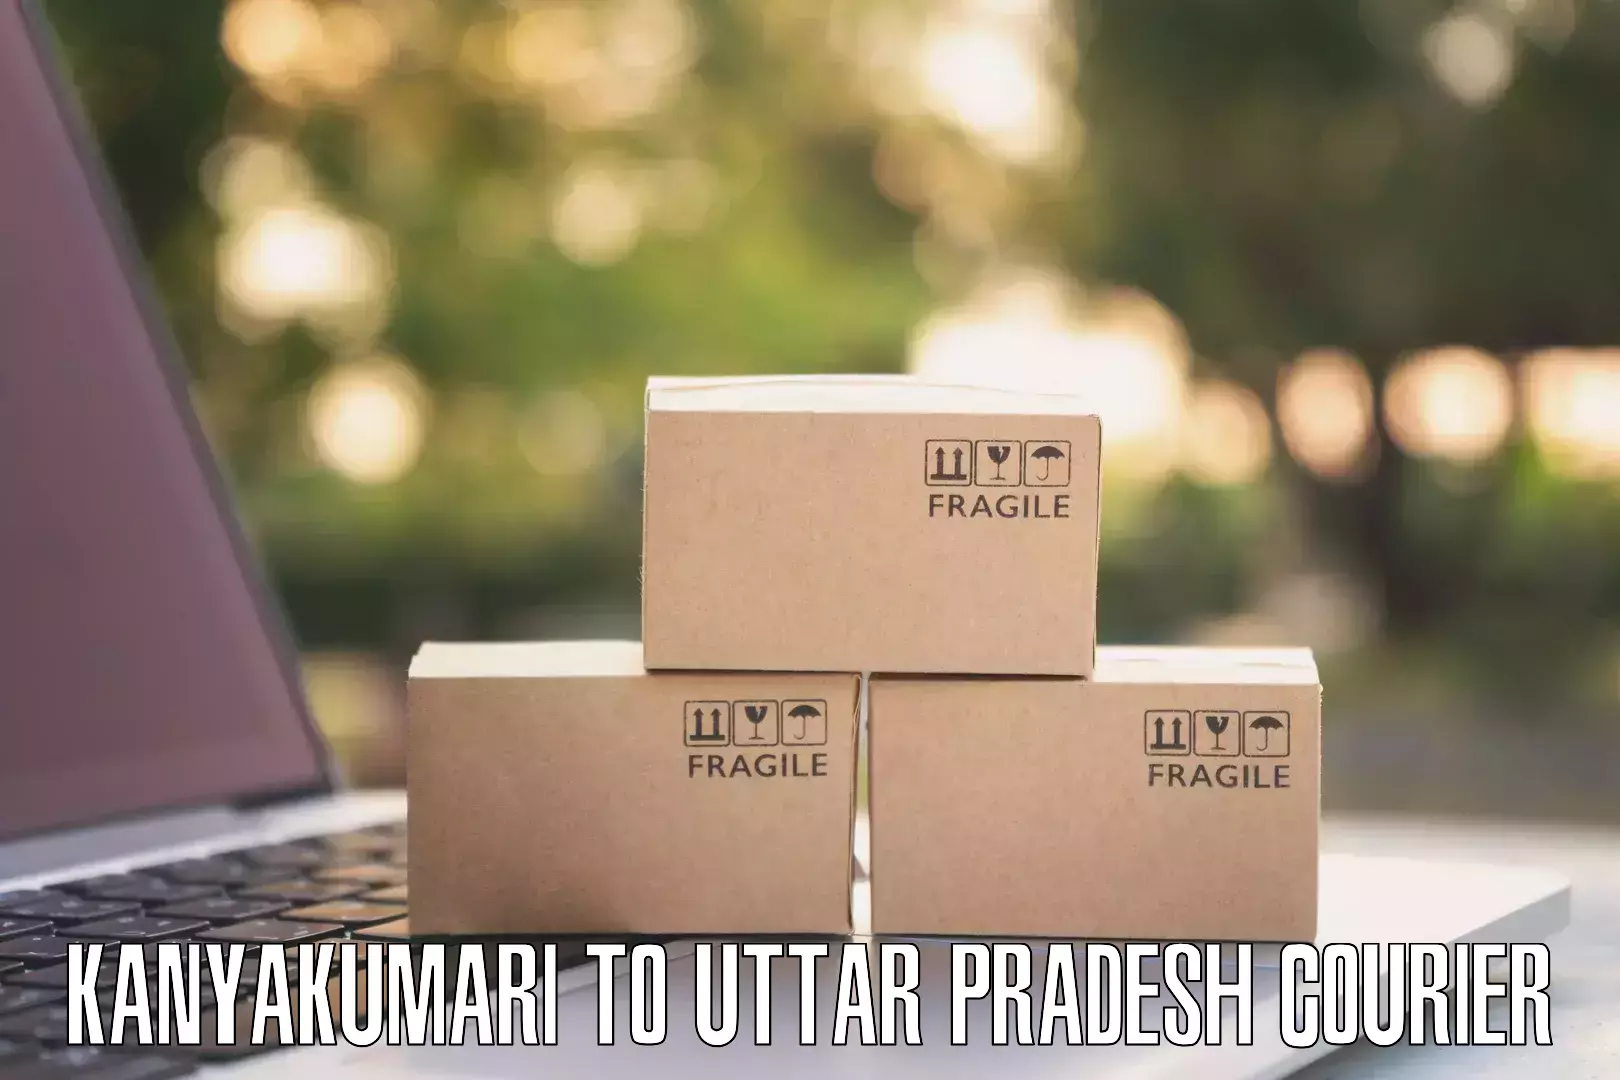 Multi-service courier options Kanyakumari to Uttar Pradesh